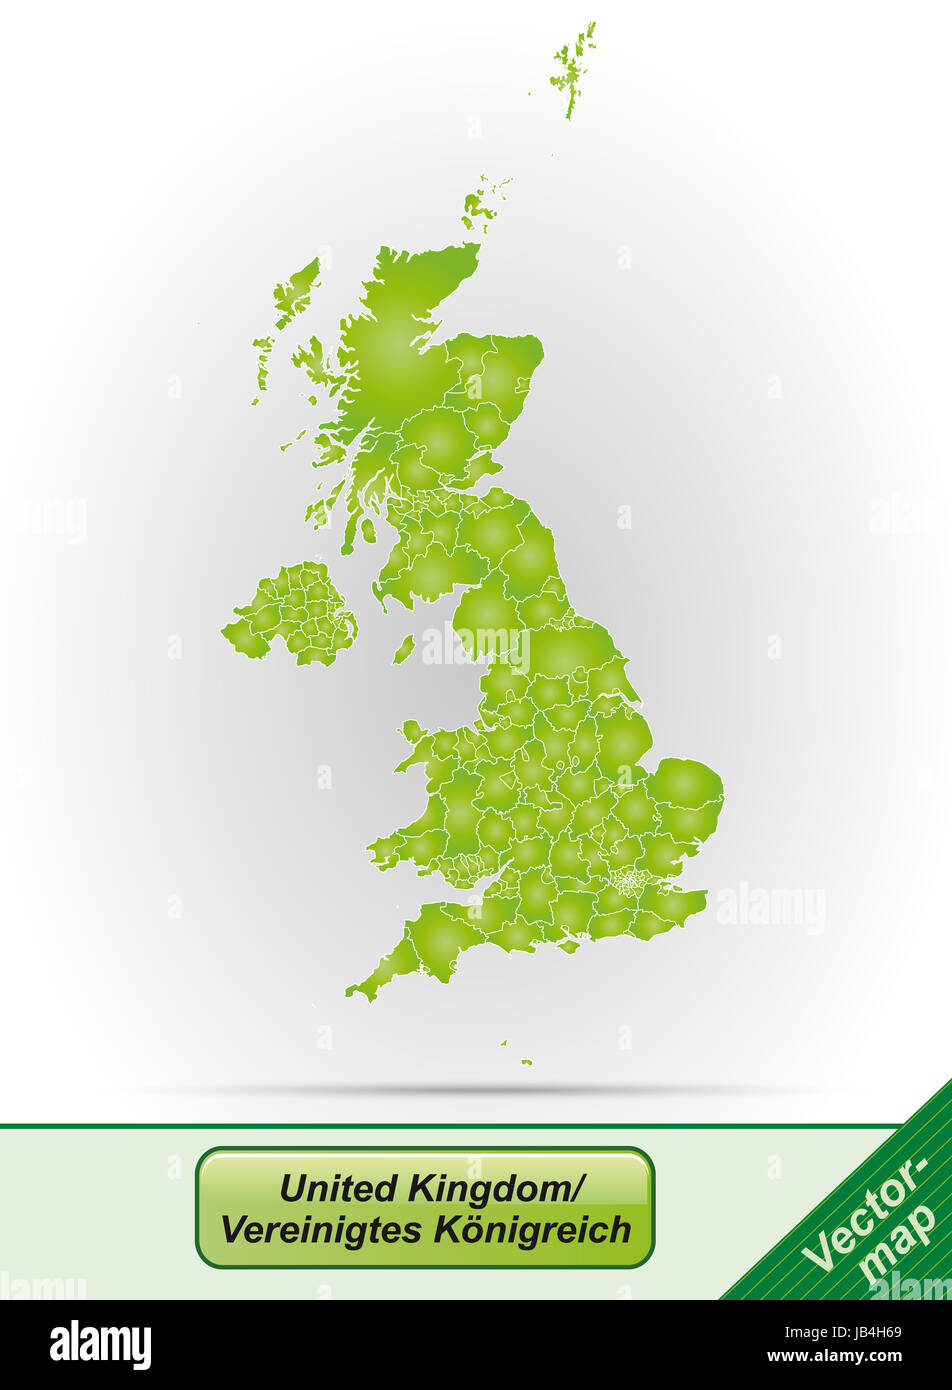 Vereinigtes Königreich en Europa als Grenzkarte mit Grenzen en Grün. Gestaltung fügt ansprechende durch die sich die Karte perfecta en RSI Vorhaben ein. Foto de stock